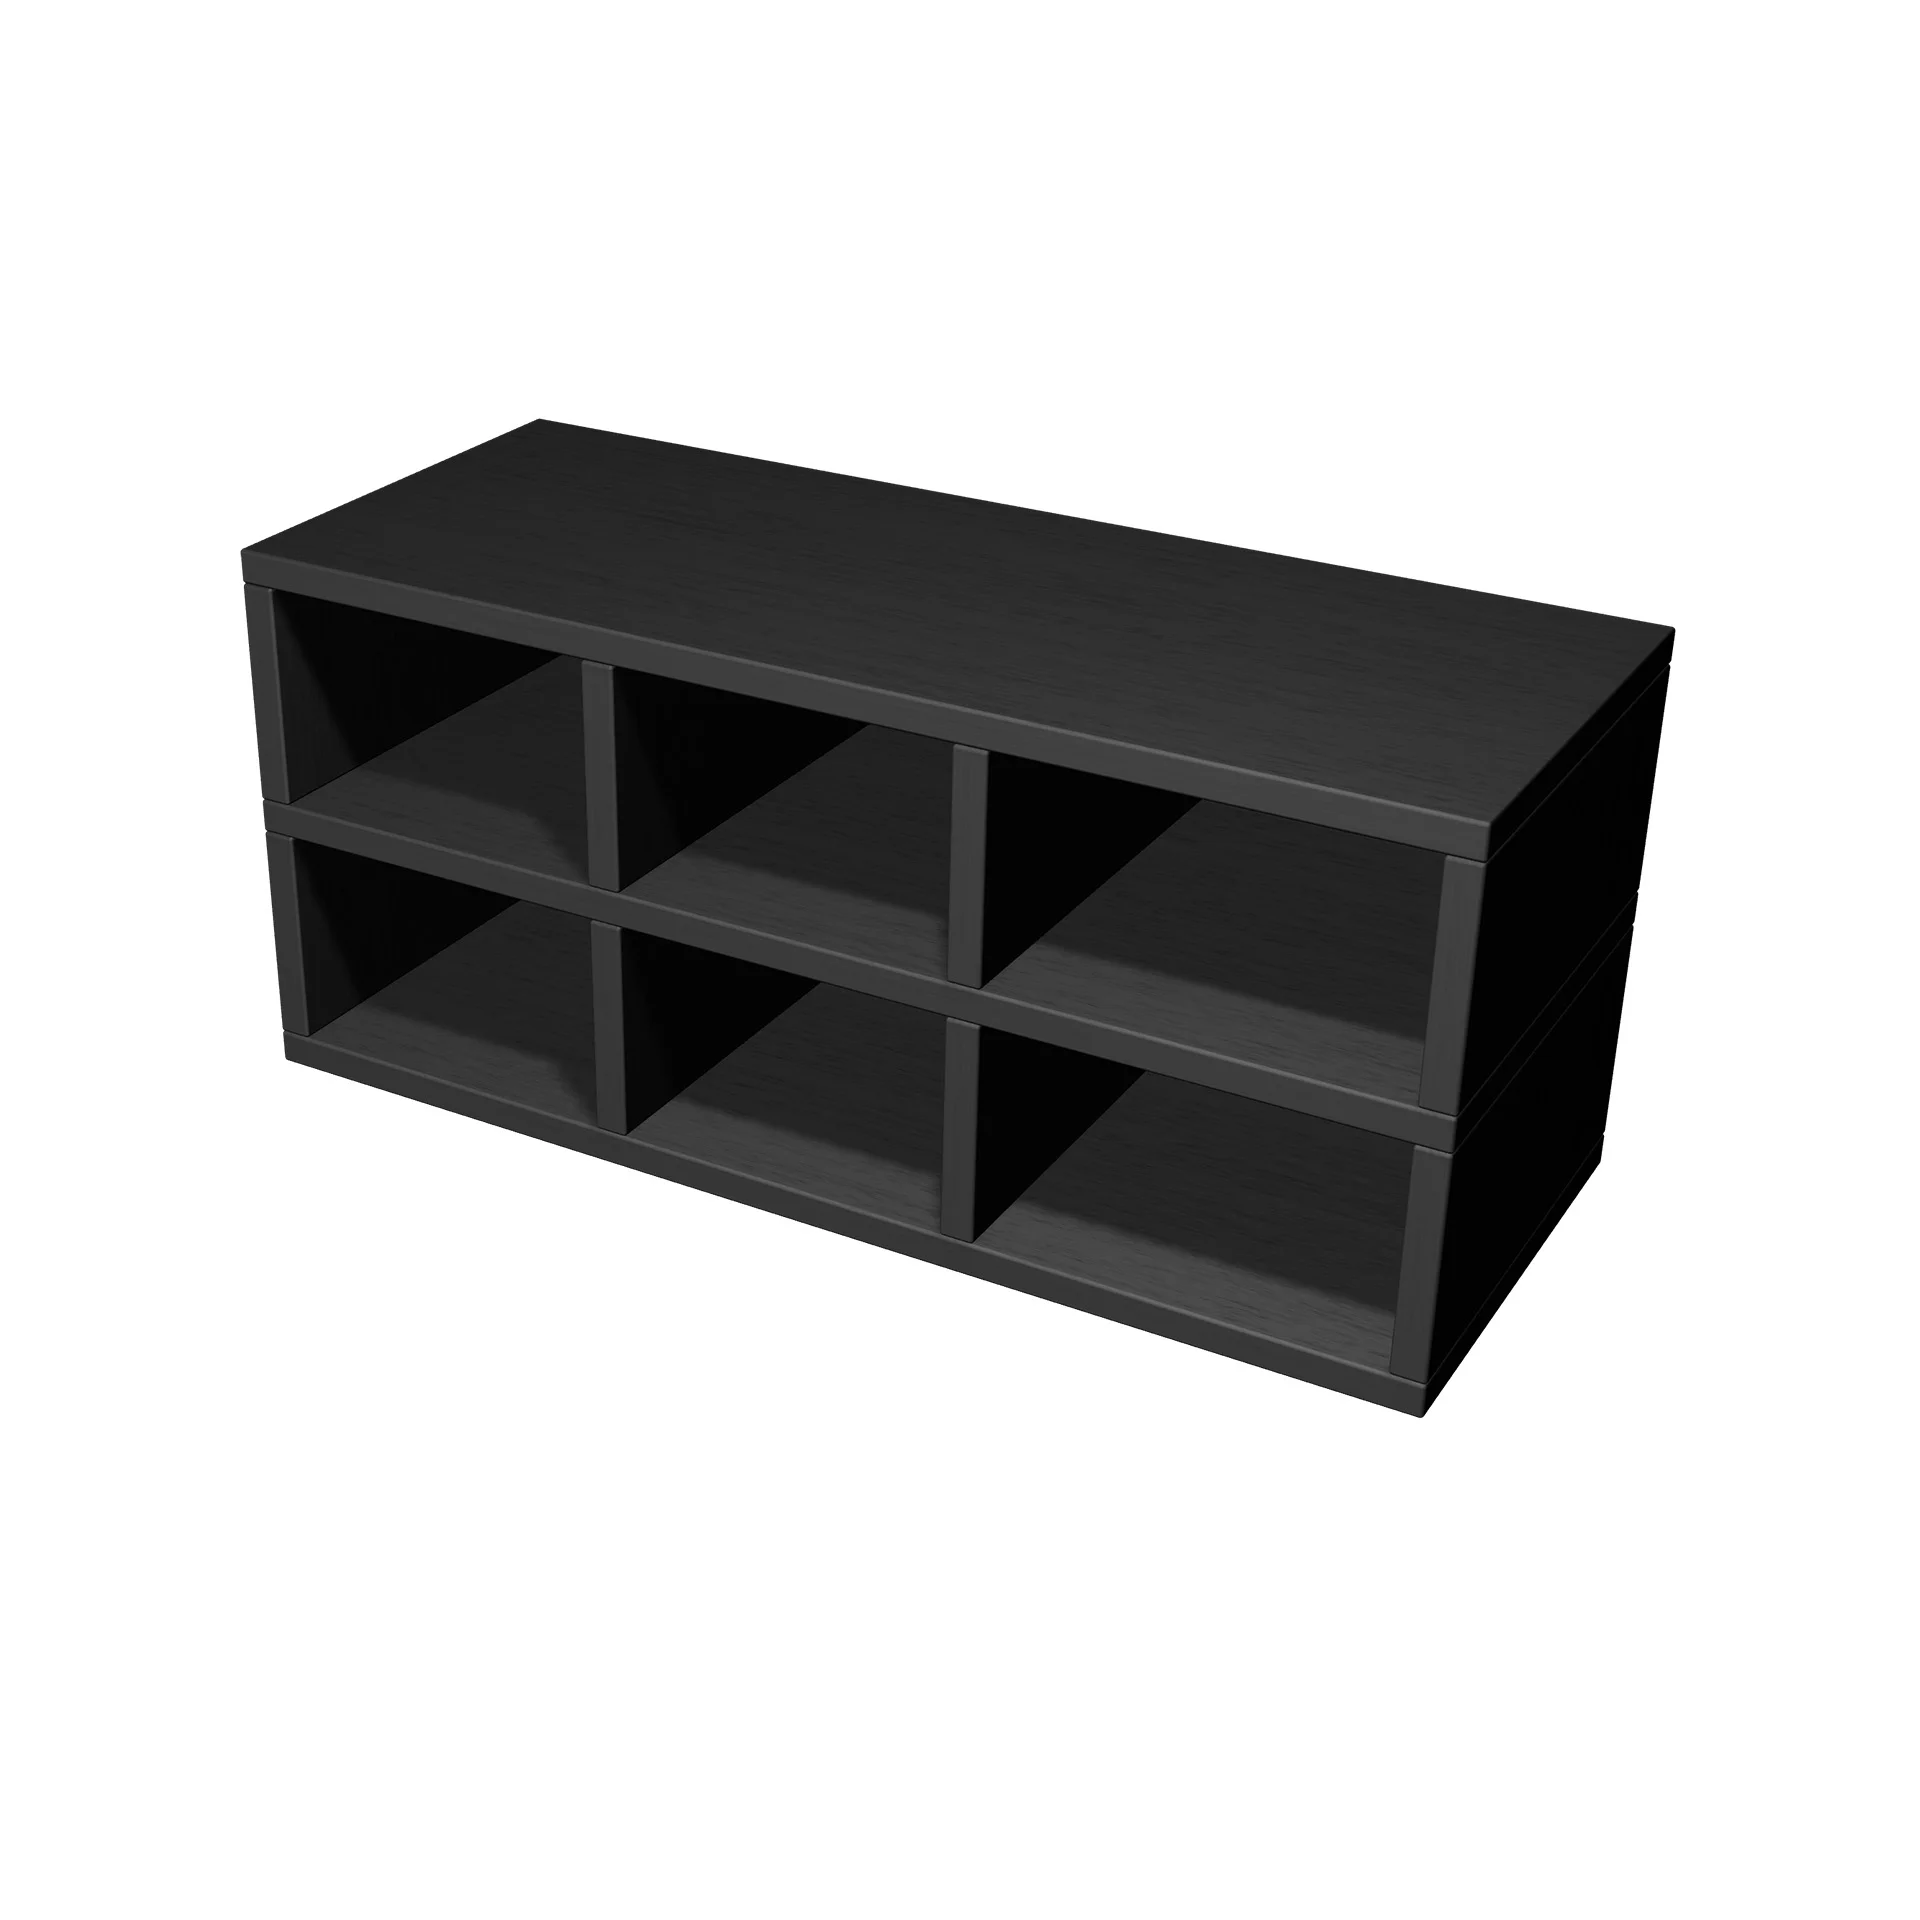 TSFC034 in black oak furniture board